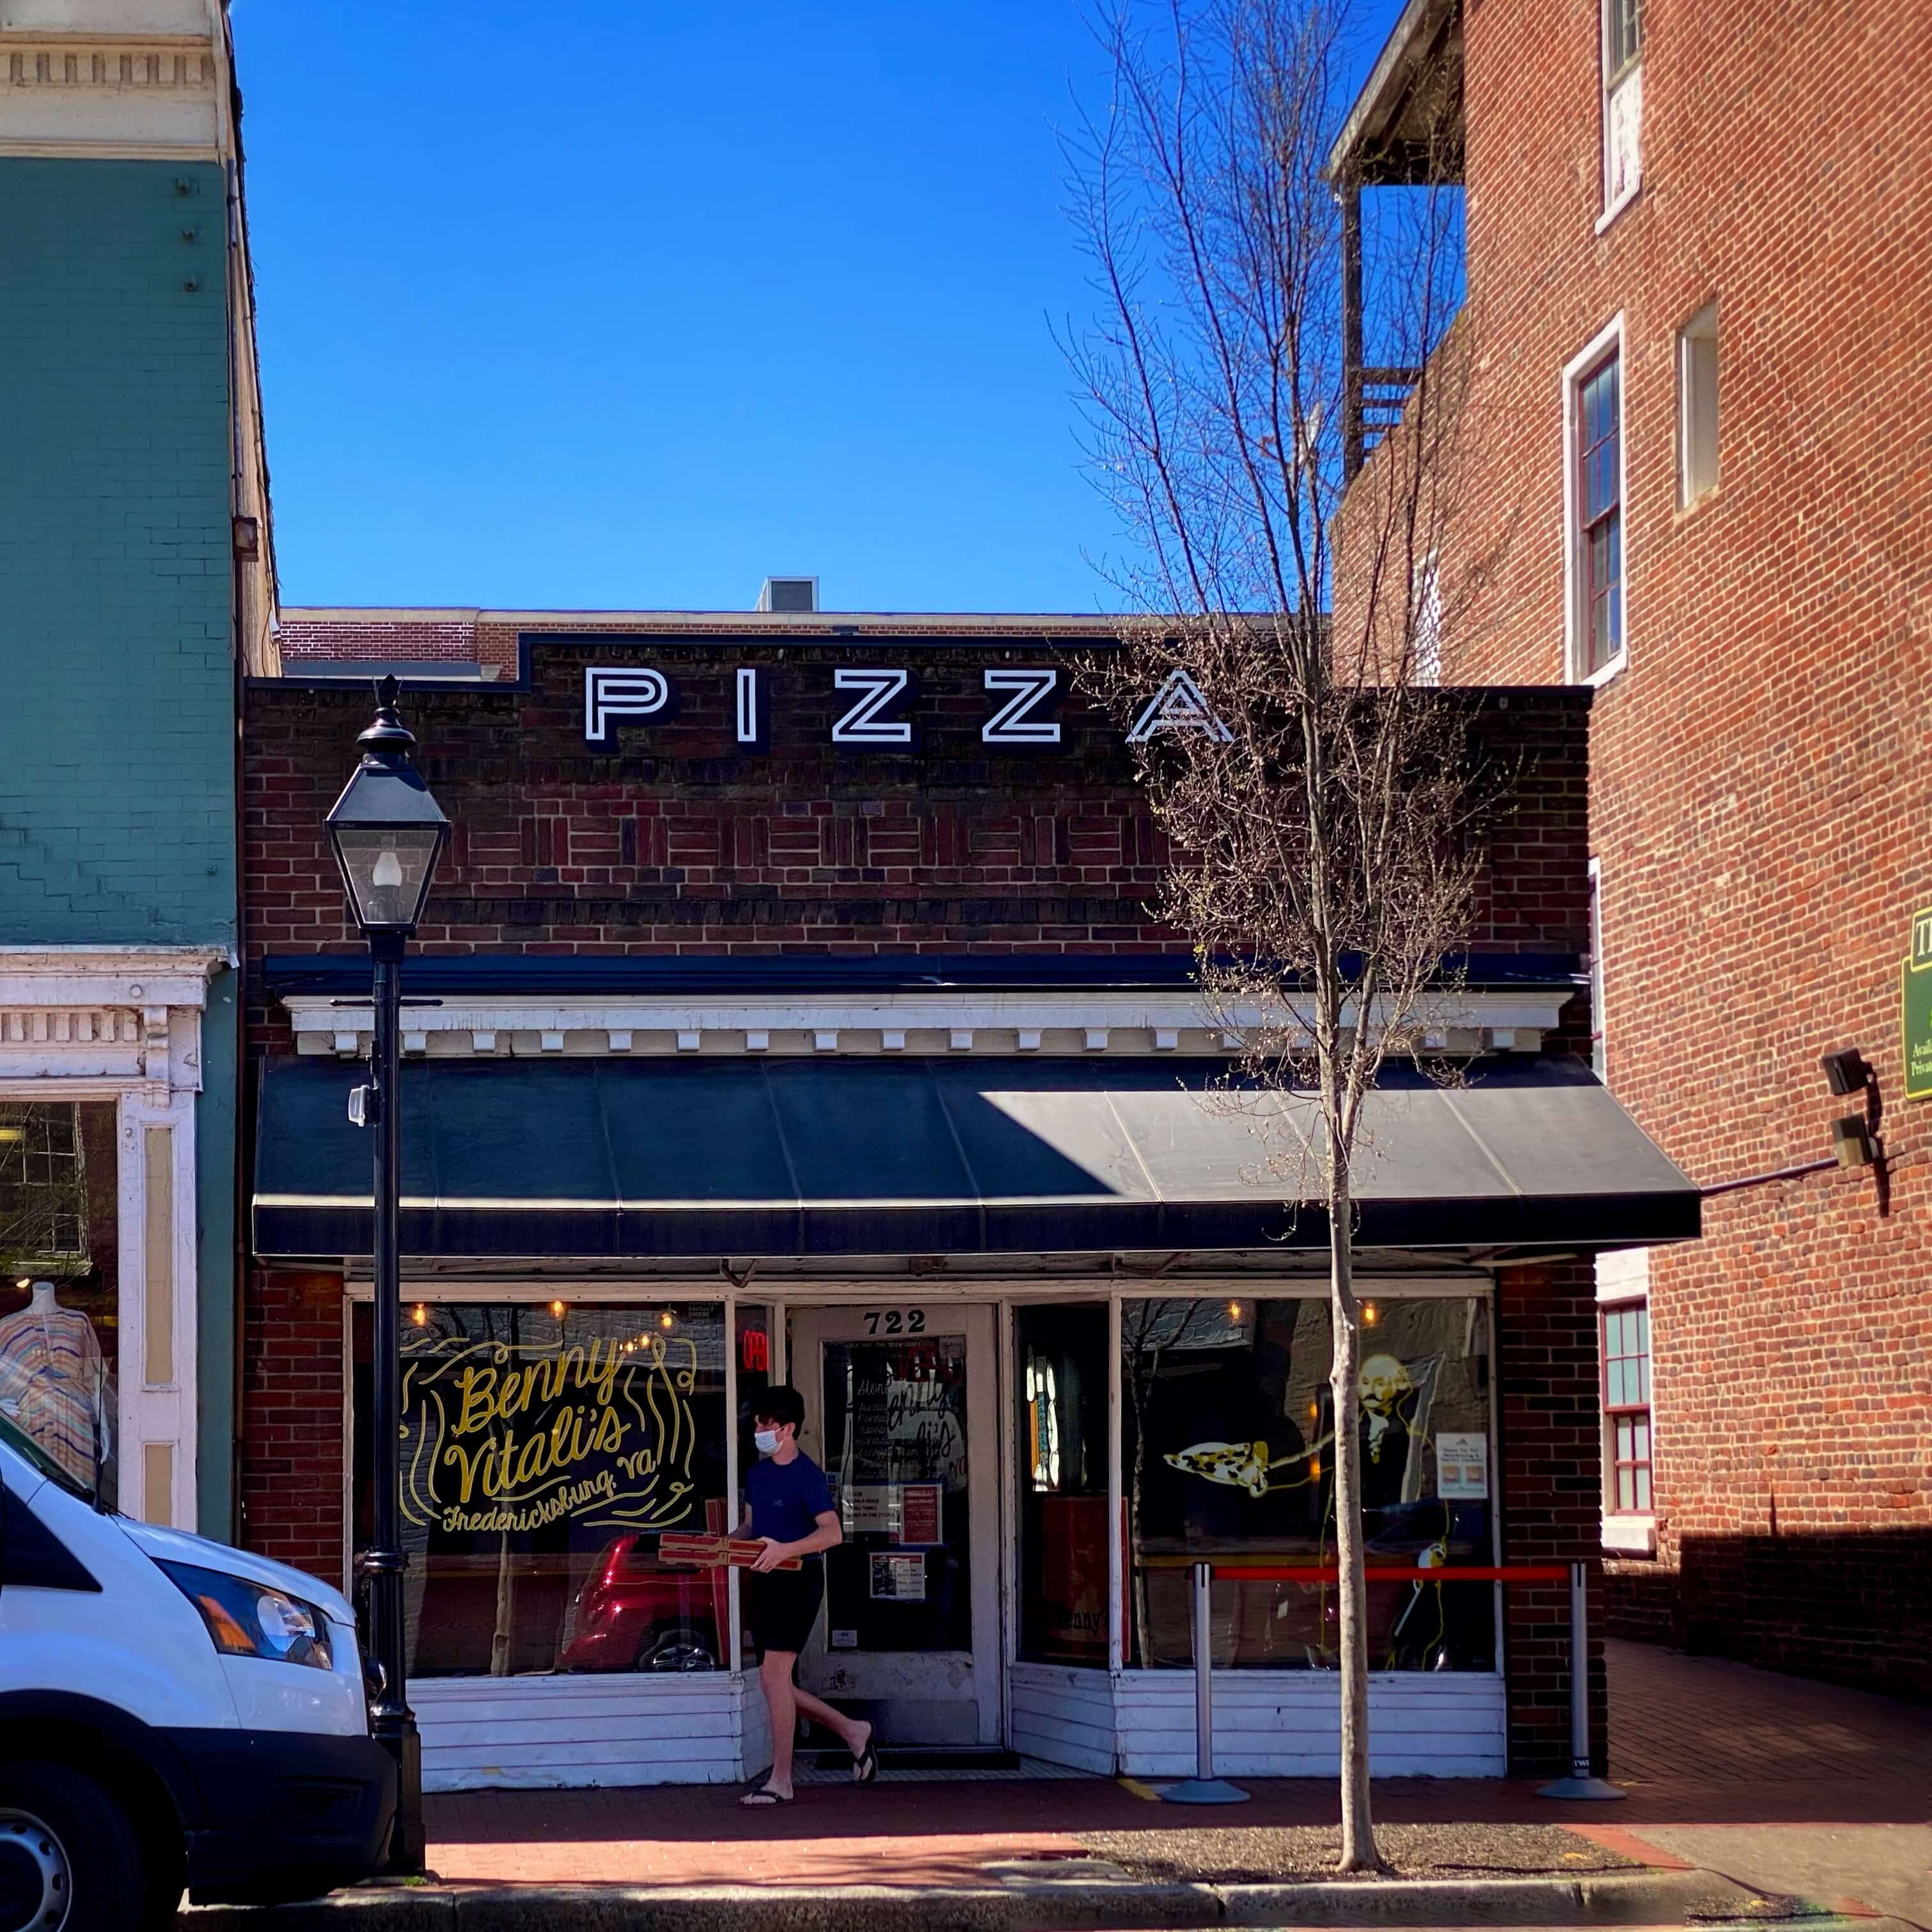 Benny Vitali's Pizza in Fredericksburg, Virginia